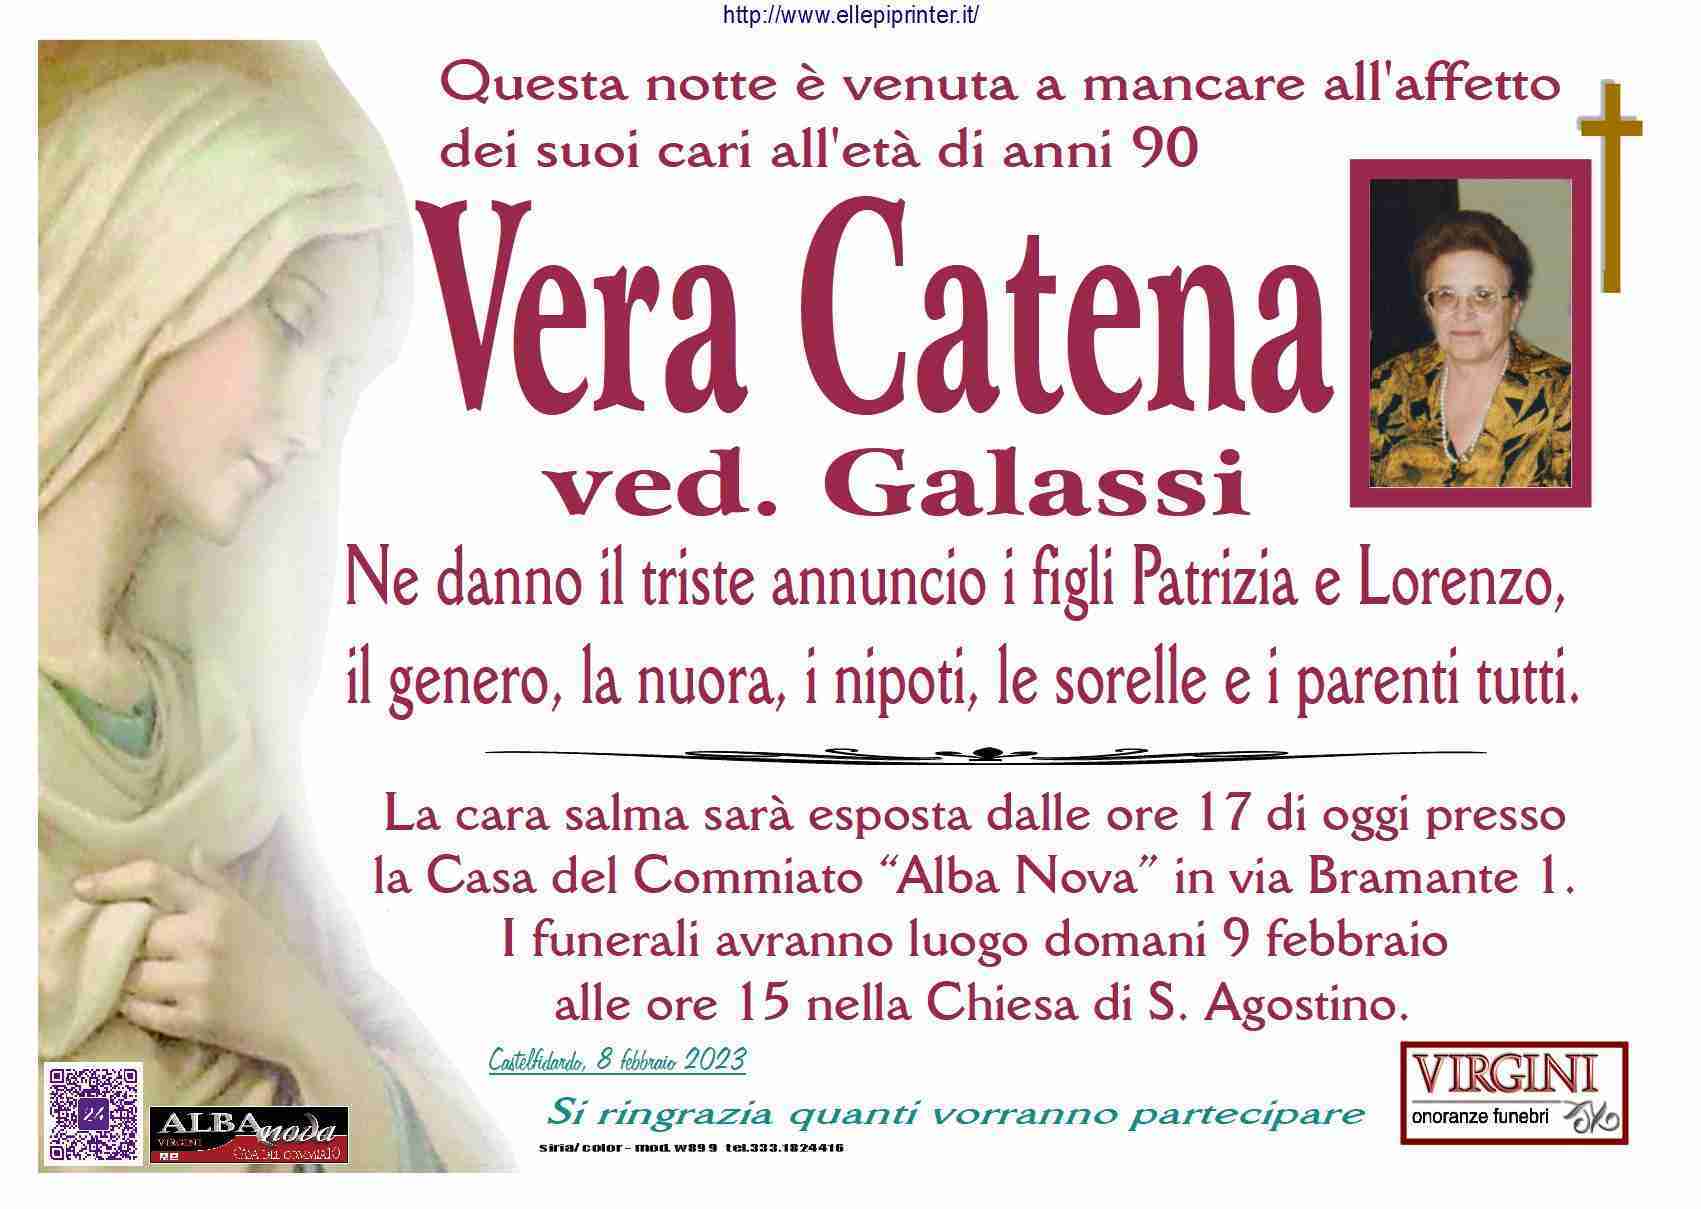 Vera Catena